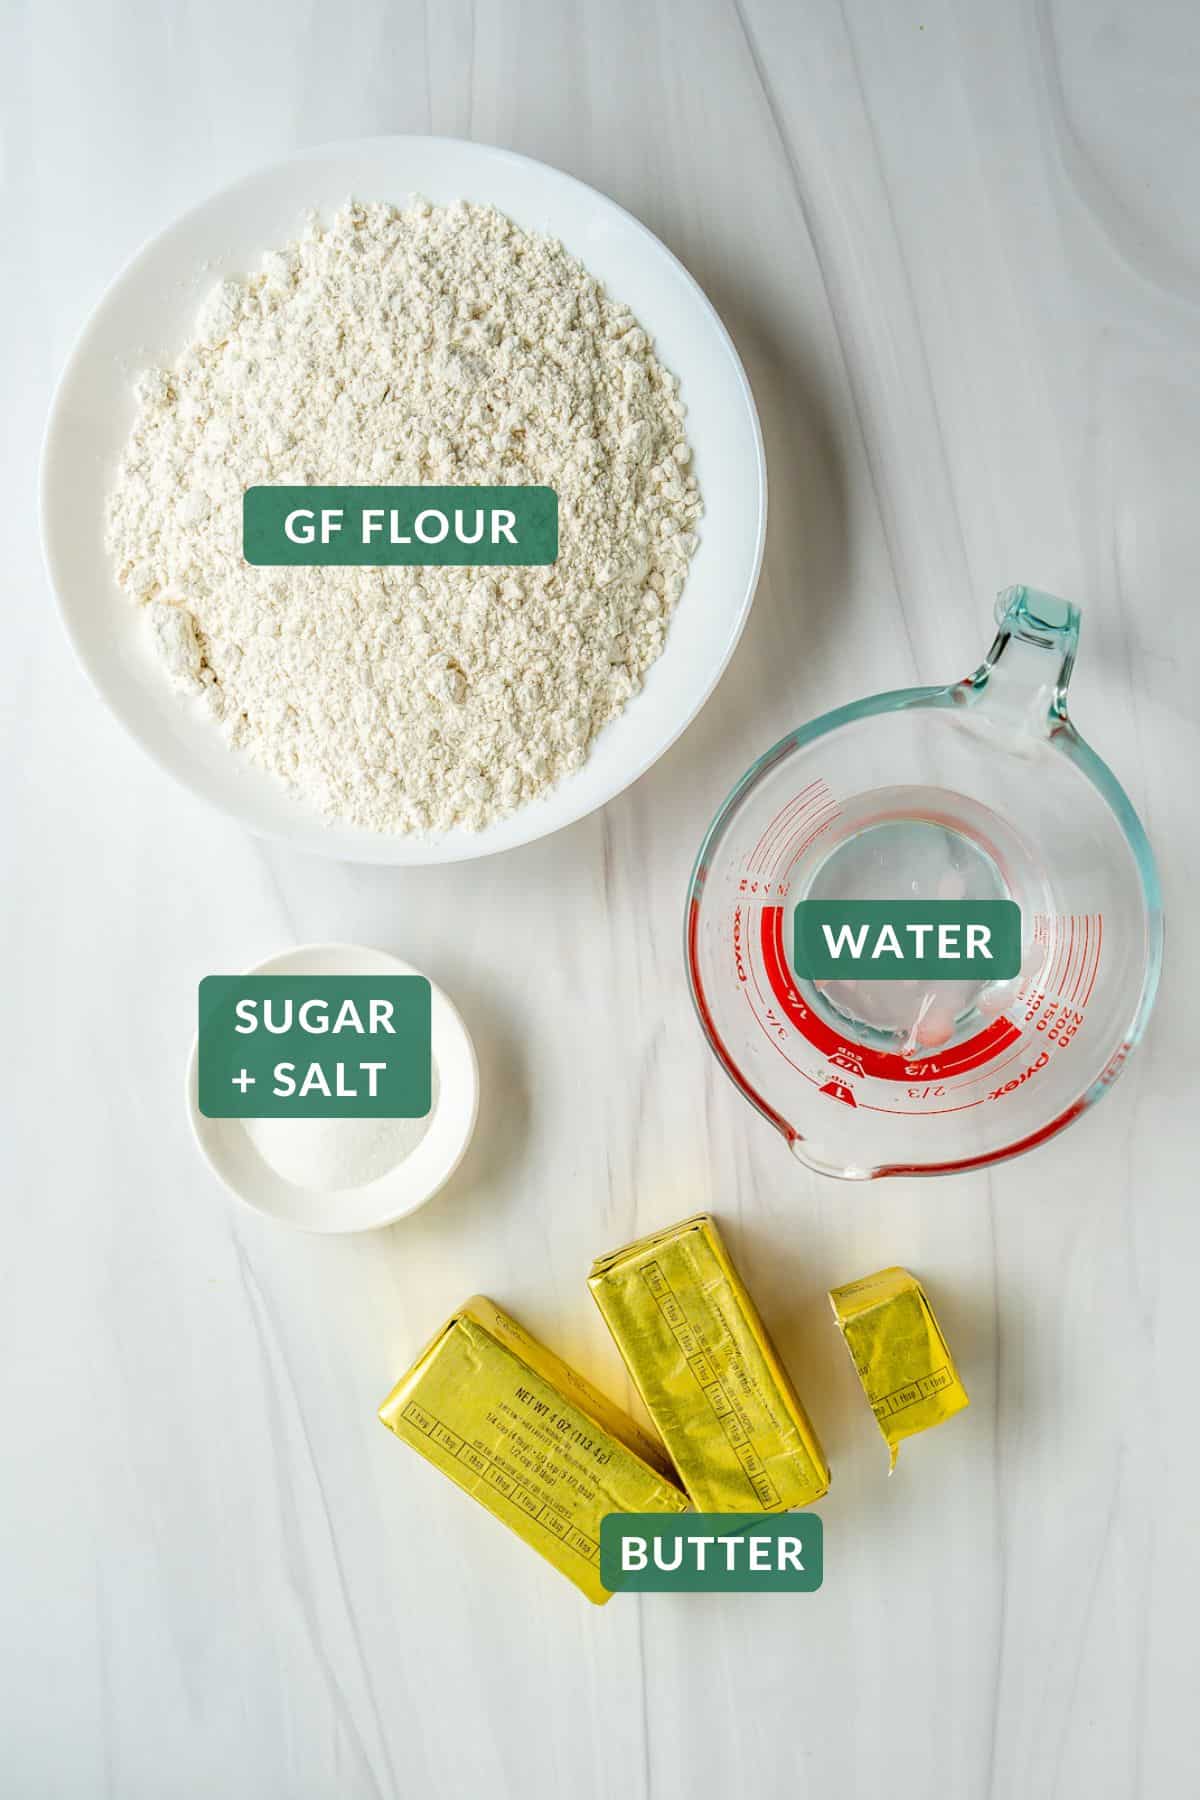 Gluten-free pie crust ingredients: GF Flour, sticks of butter, sugar, salt, and ice water.